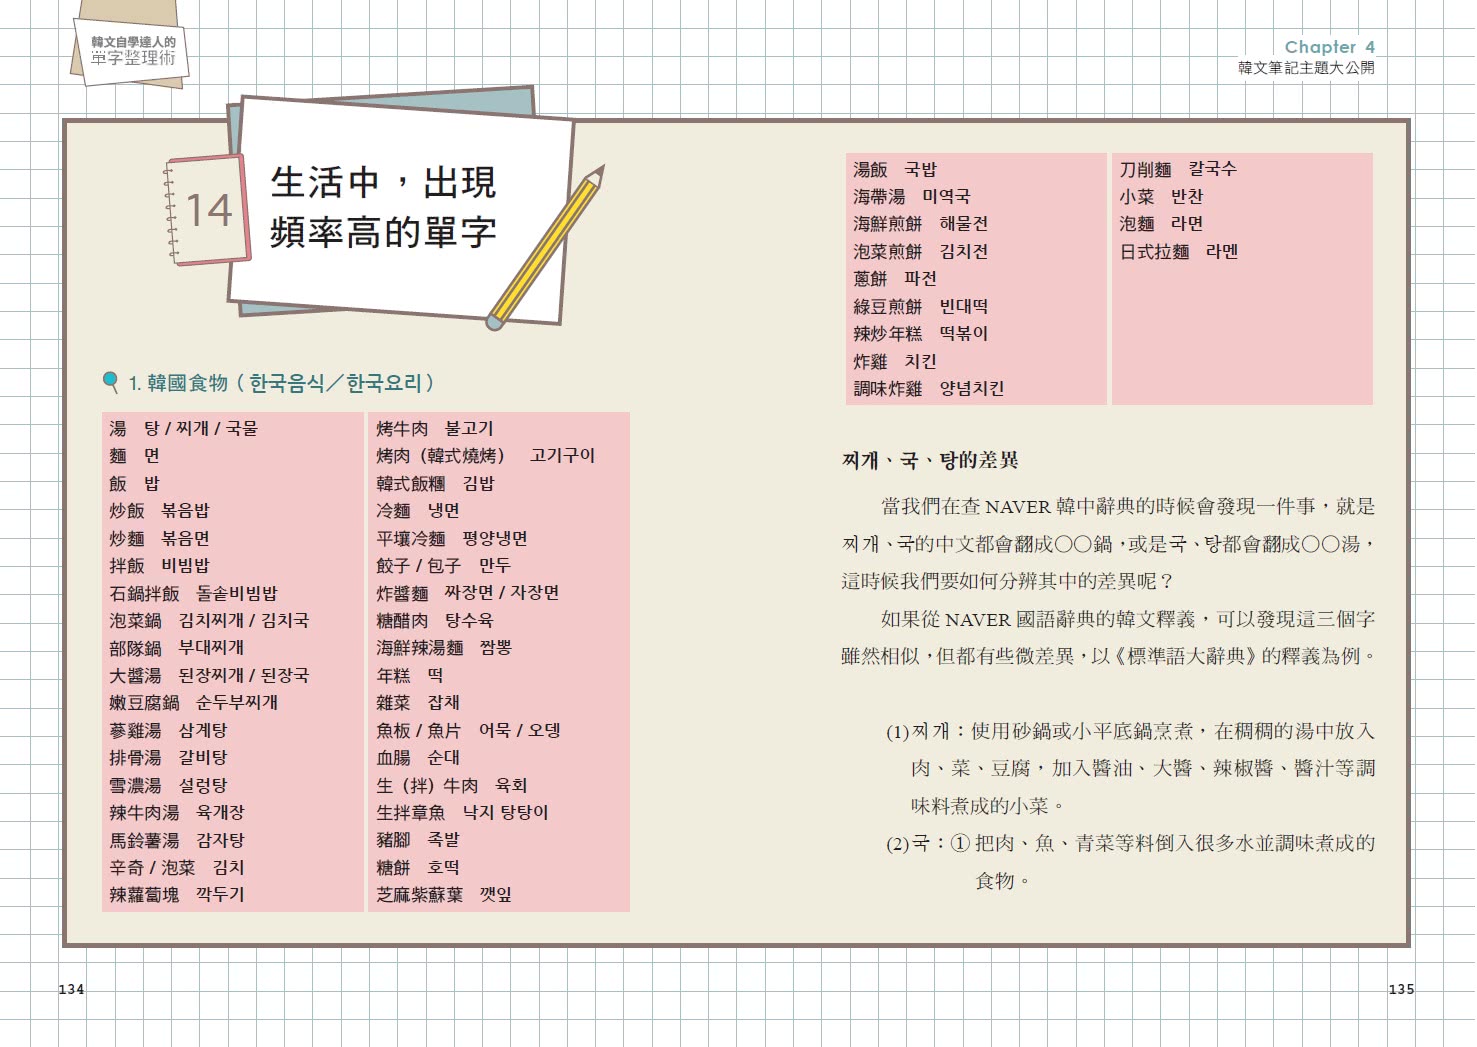 寫過就不忘 韓文自學達人的單字整理術 首刷限量自學好物 親筆手寫便利貼 77的韓文筆記 教你活用資 Momo購物網 好評推薦